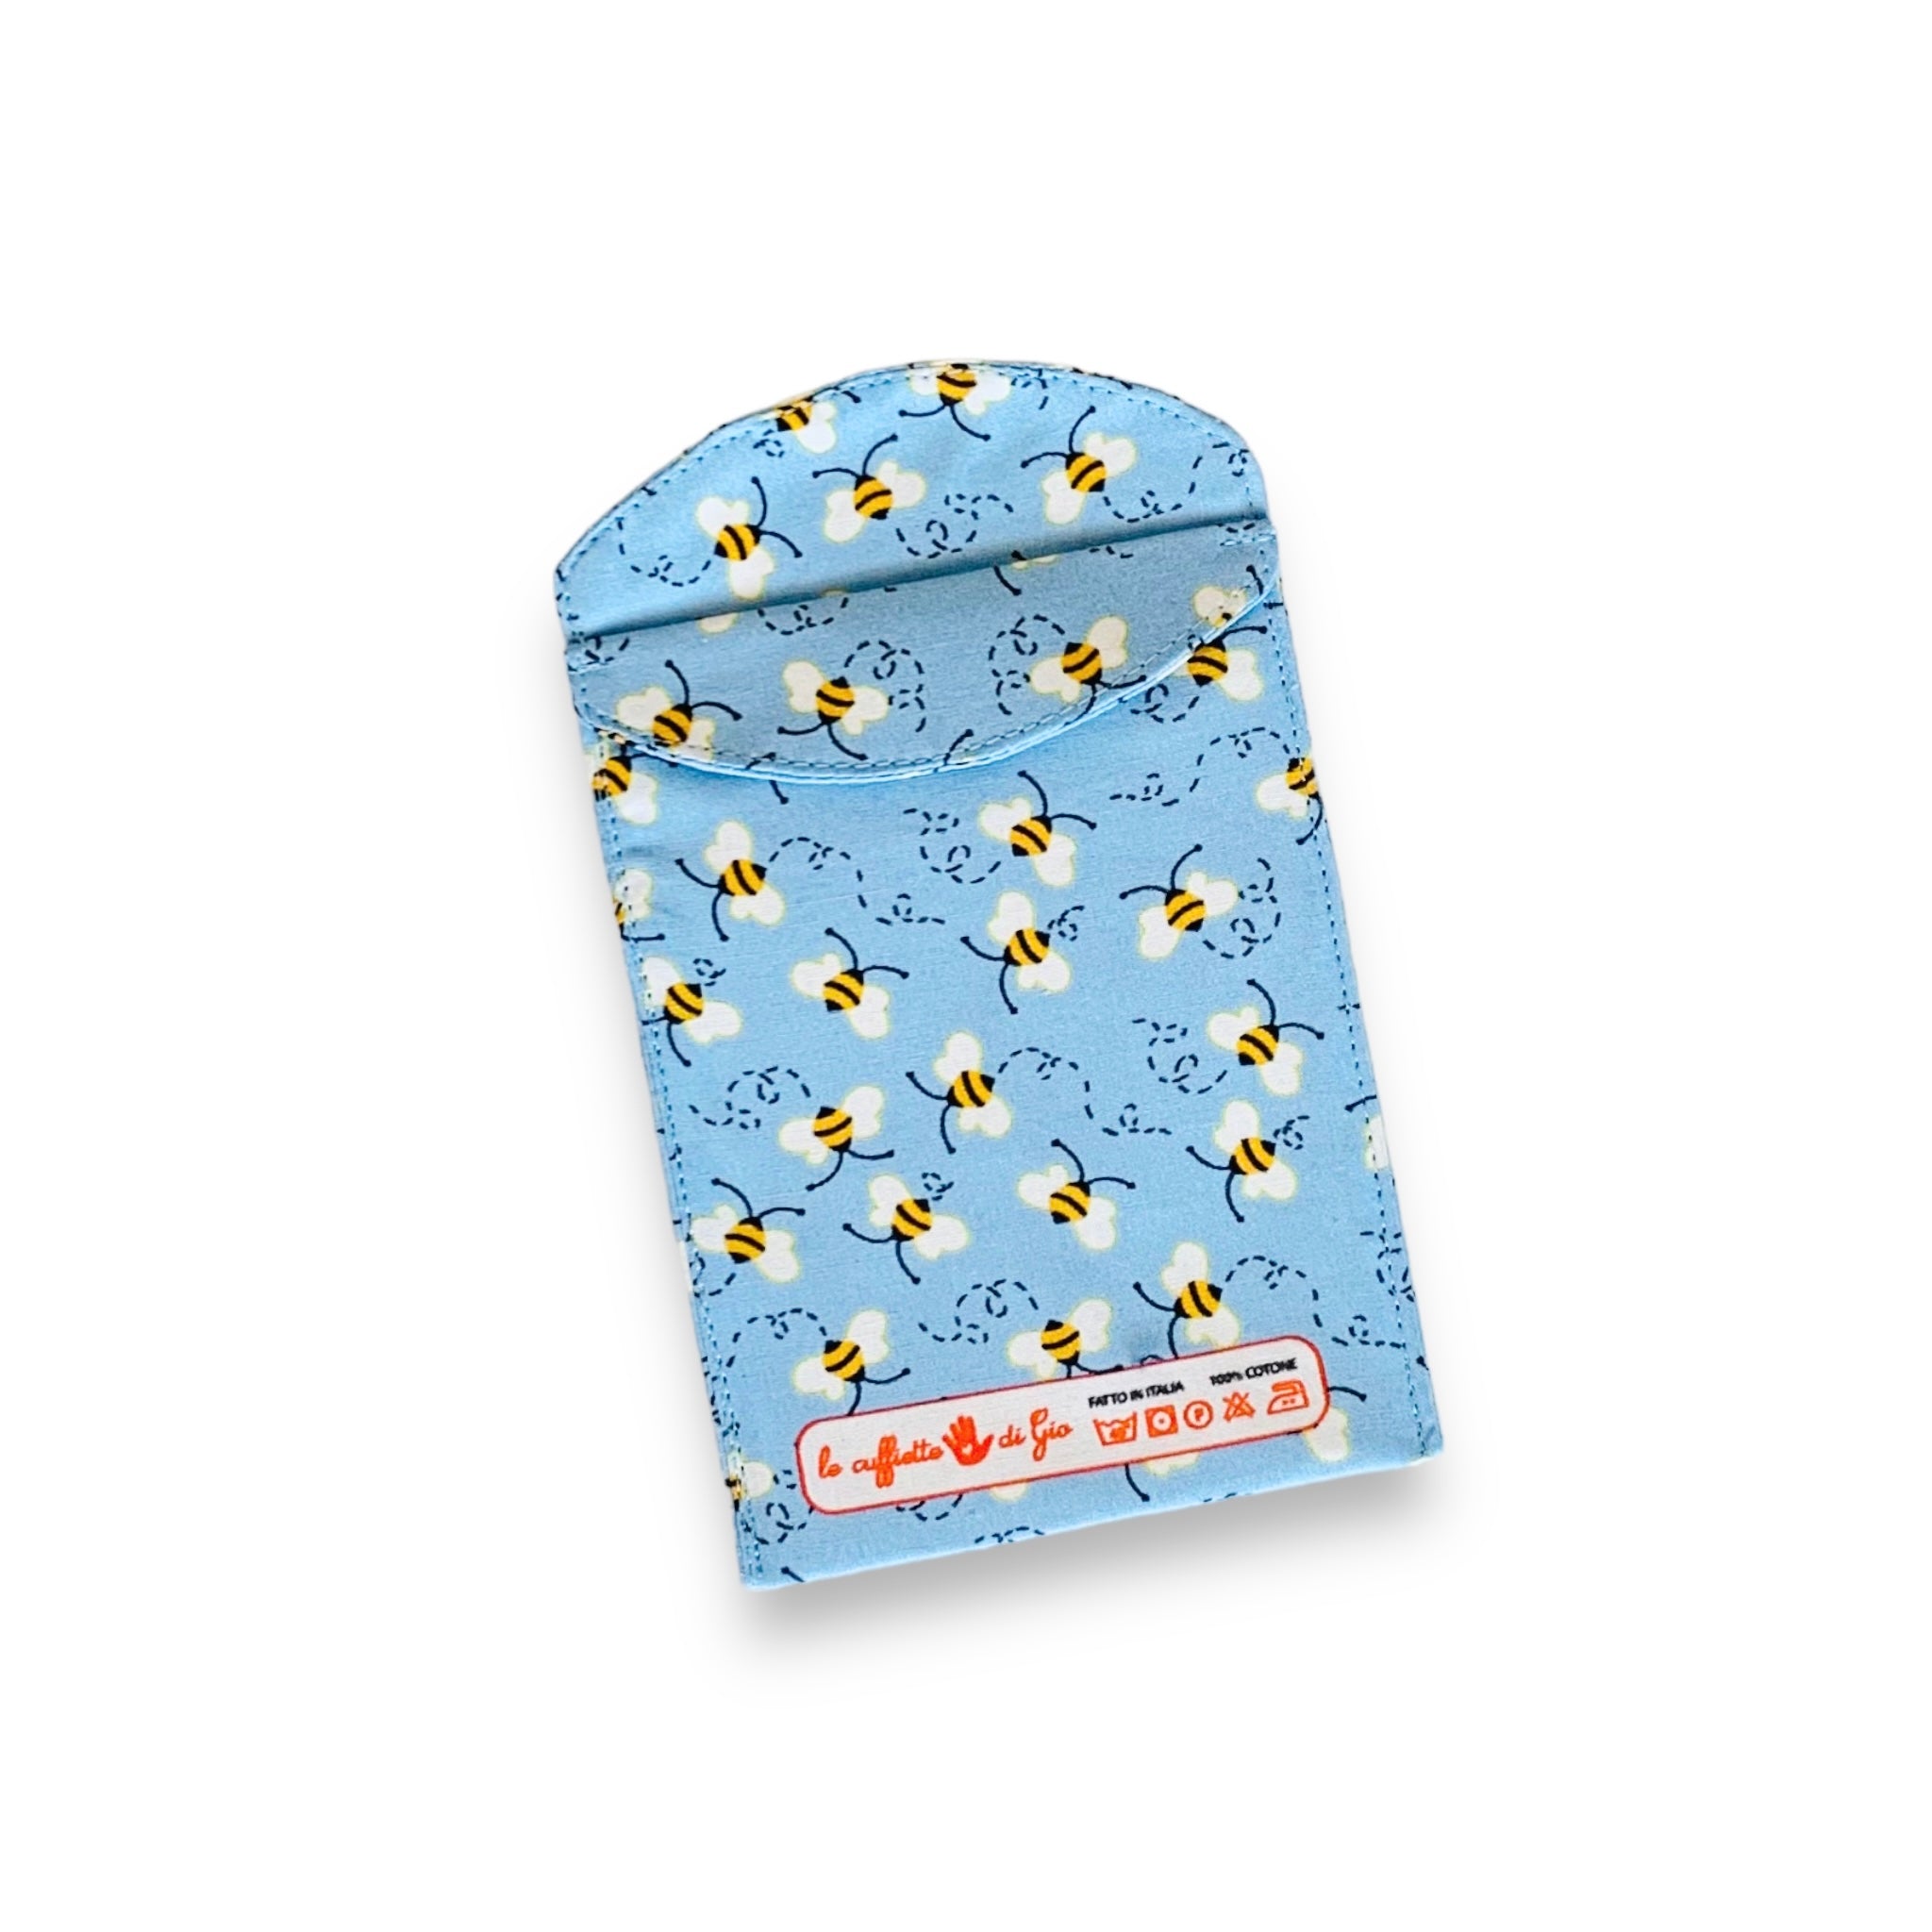 Portapenne da taschino con apine svolazzanti su sfondo azzurro